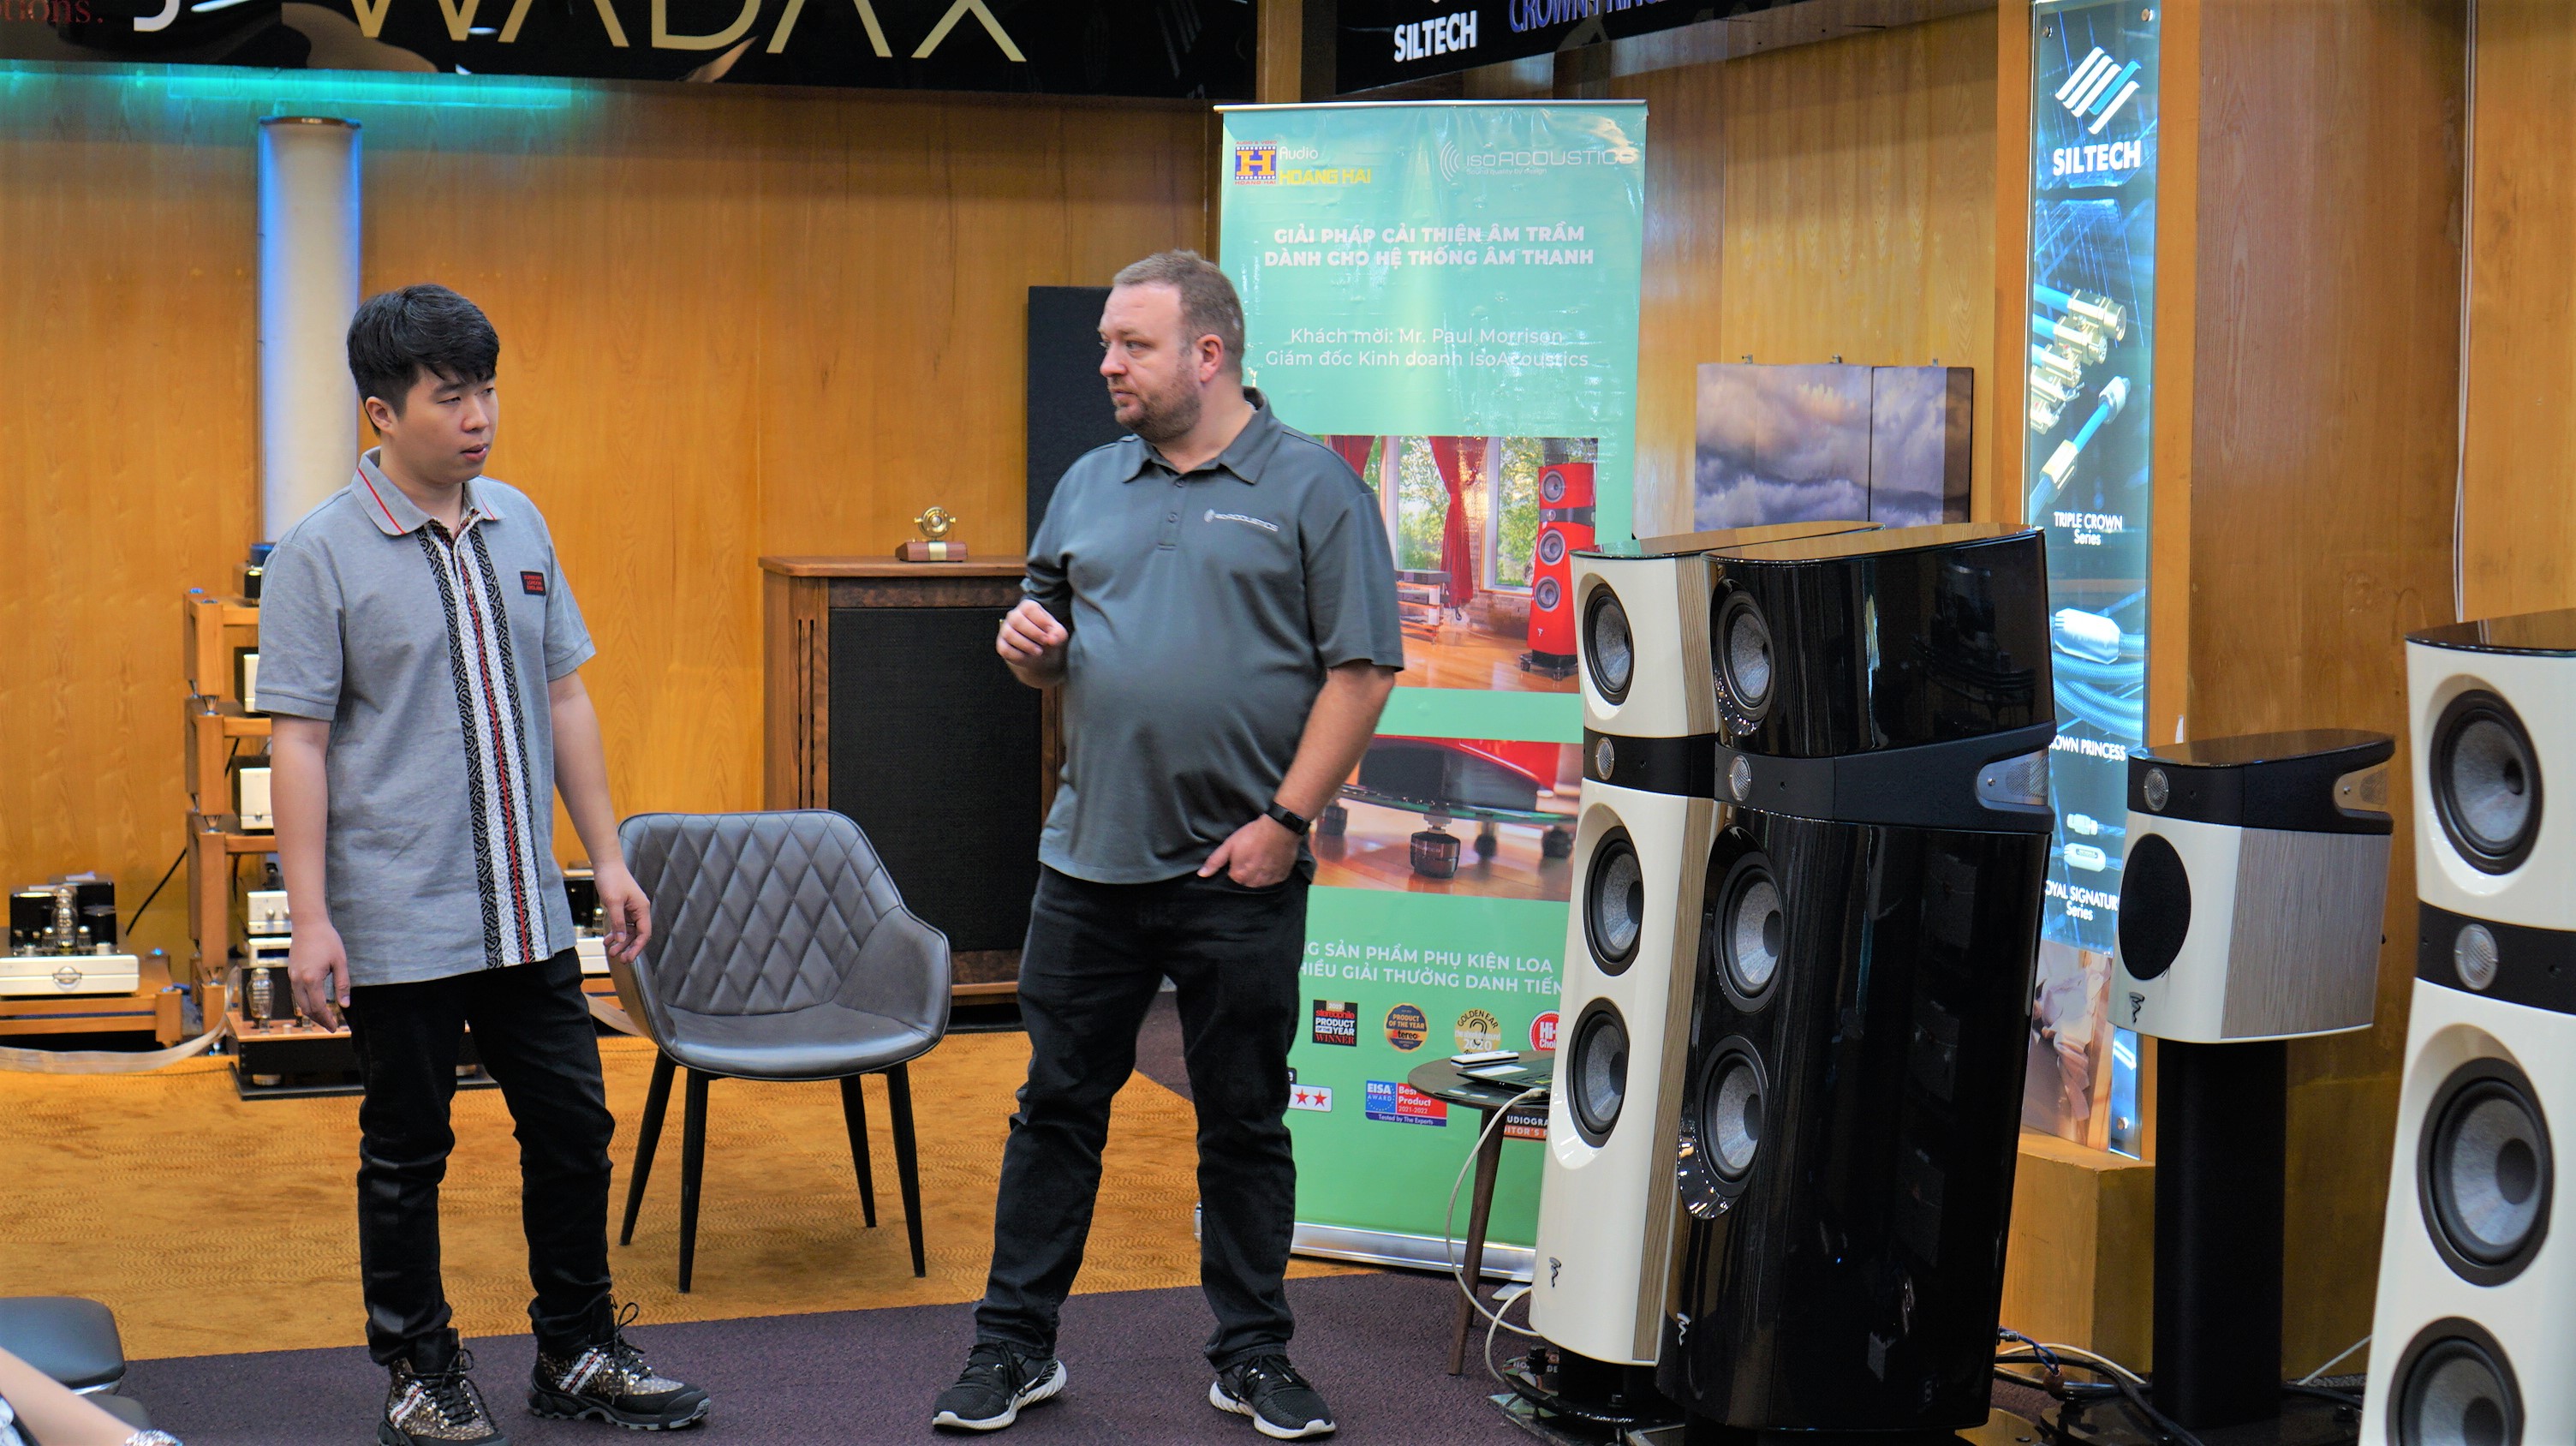 Giới thiệu giải pháp cách ly rung động cho hệ thống âm thanh cùng Mr. Paul Morrison - Giám đốc IsoAcoustics | Audio Hoàng Hải